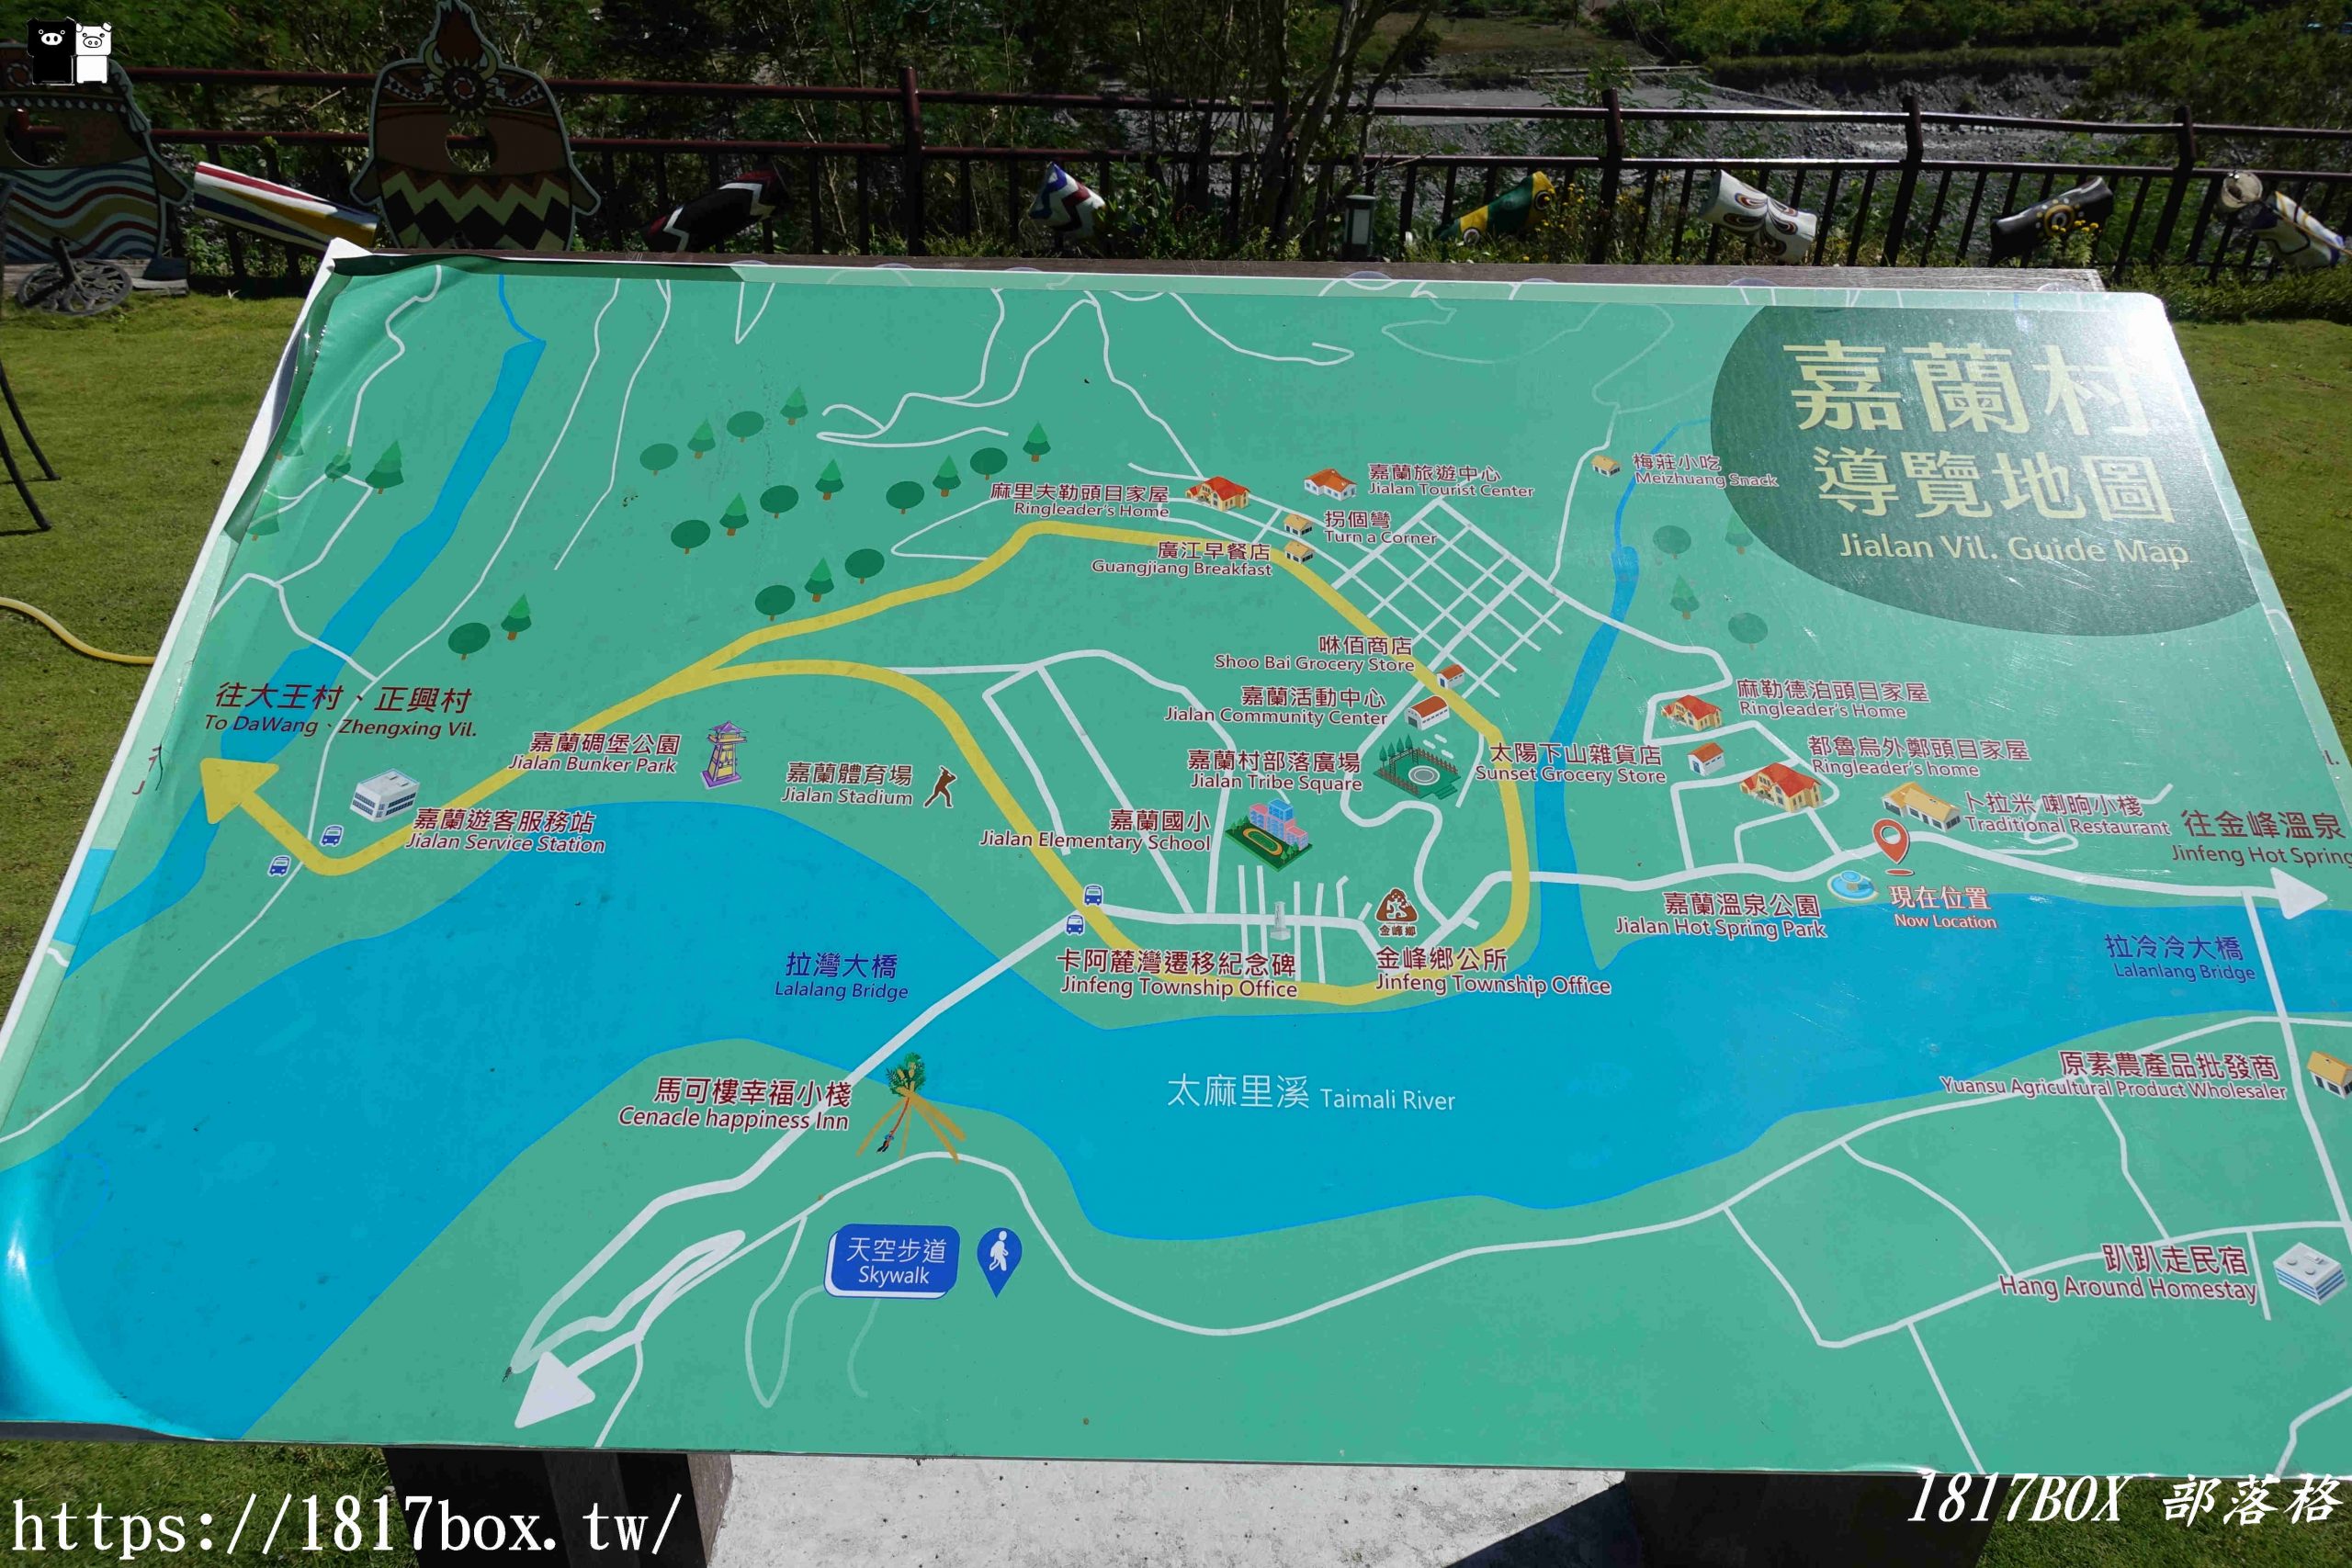 【台東。金峰】嘉蘭溫泉公園。景觀綠化溫泉泡腳區 @1817BOX部落格